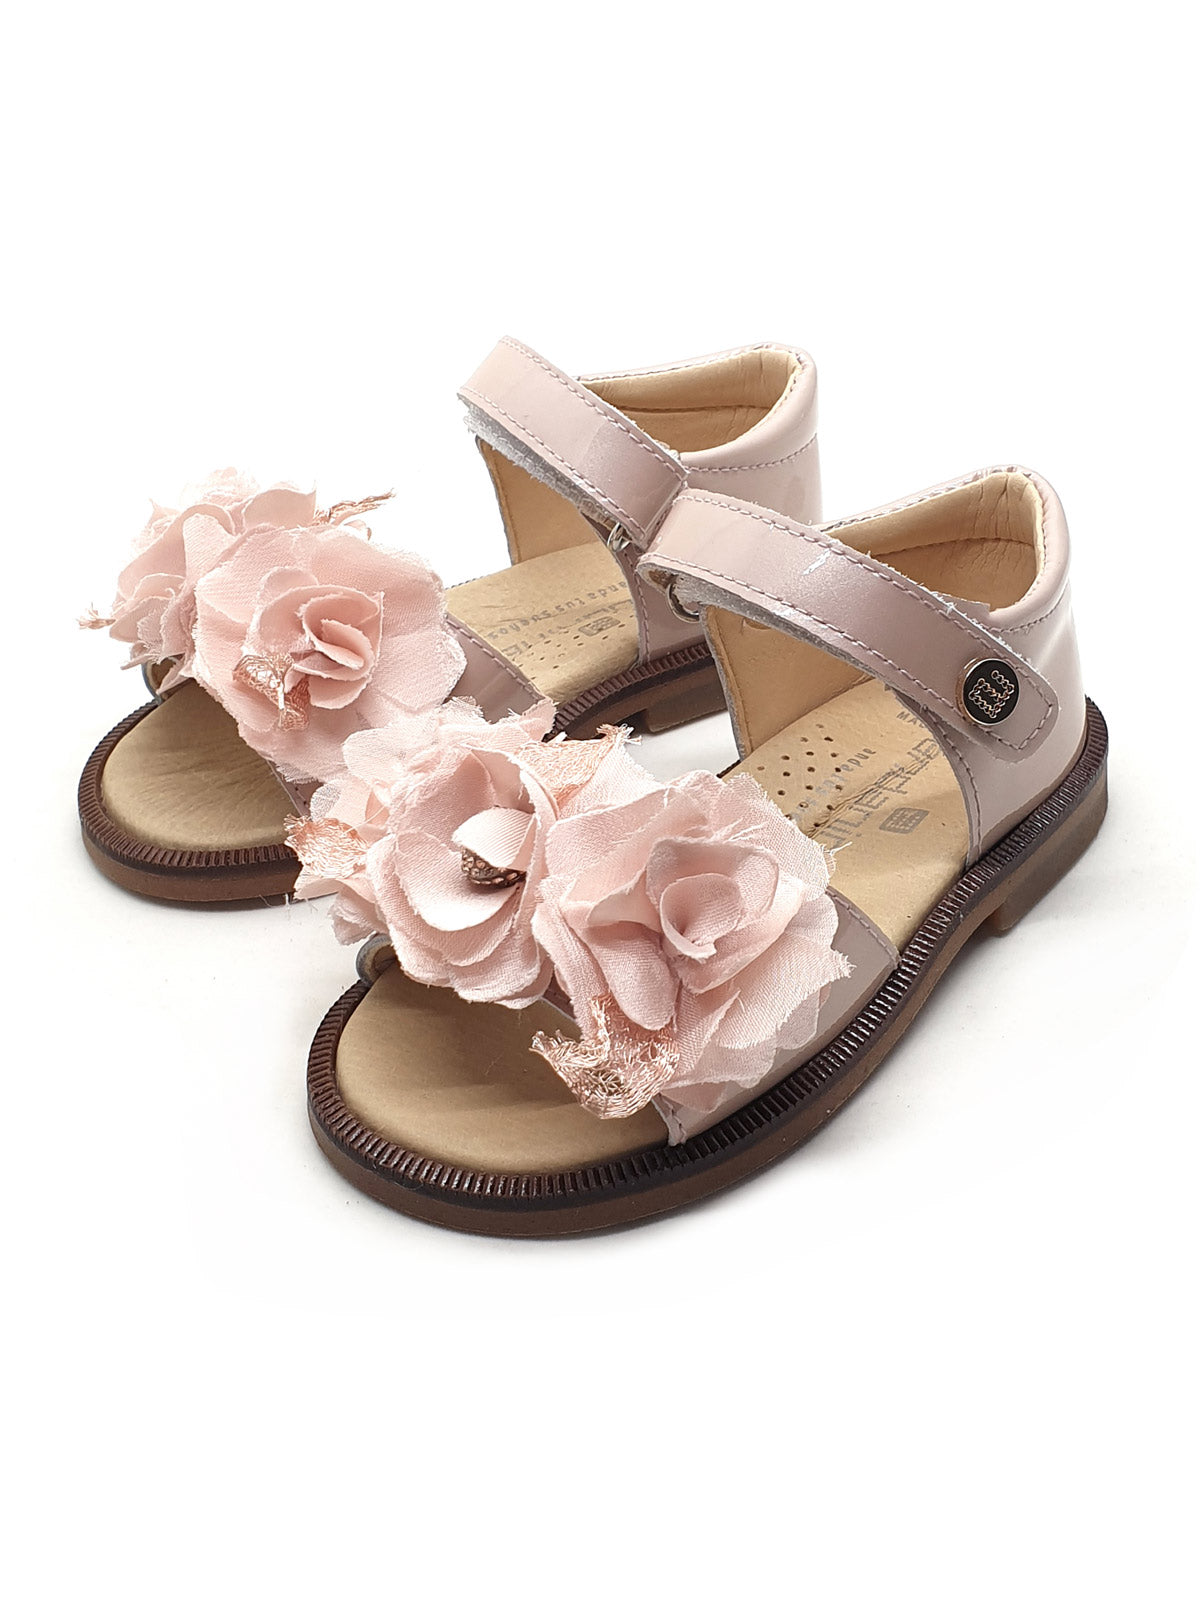 Andanines floral-appliqué leather sandals